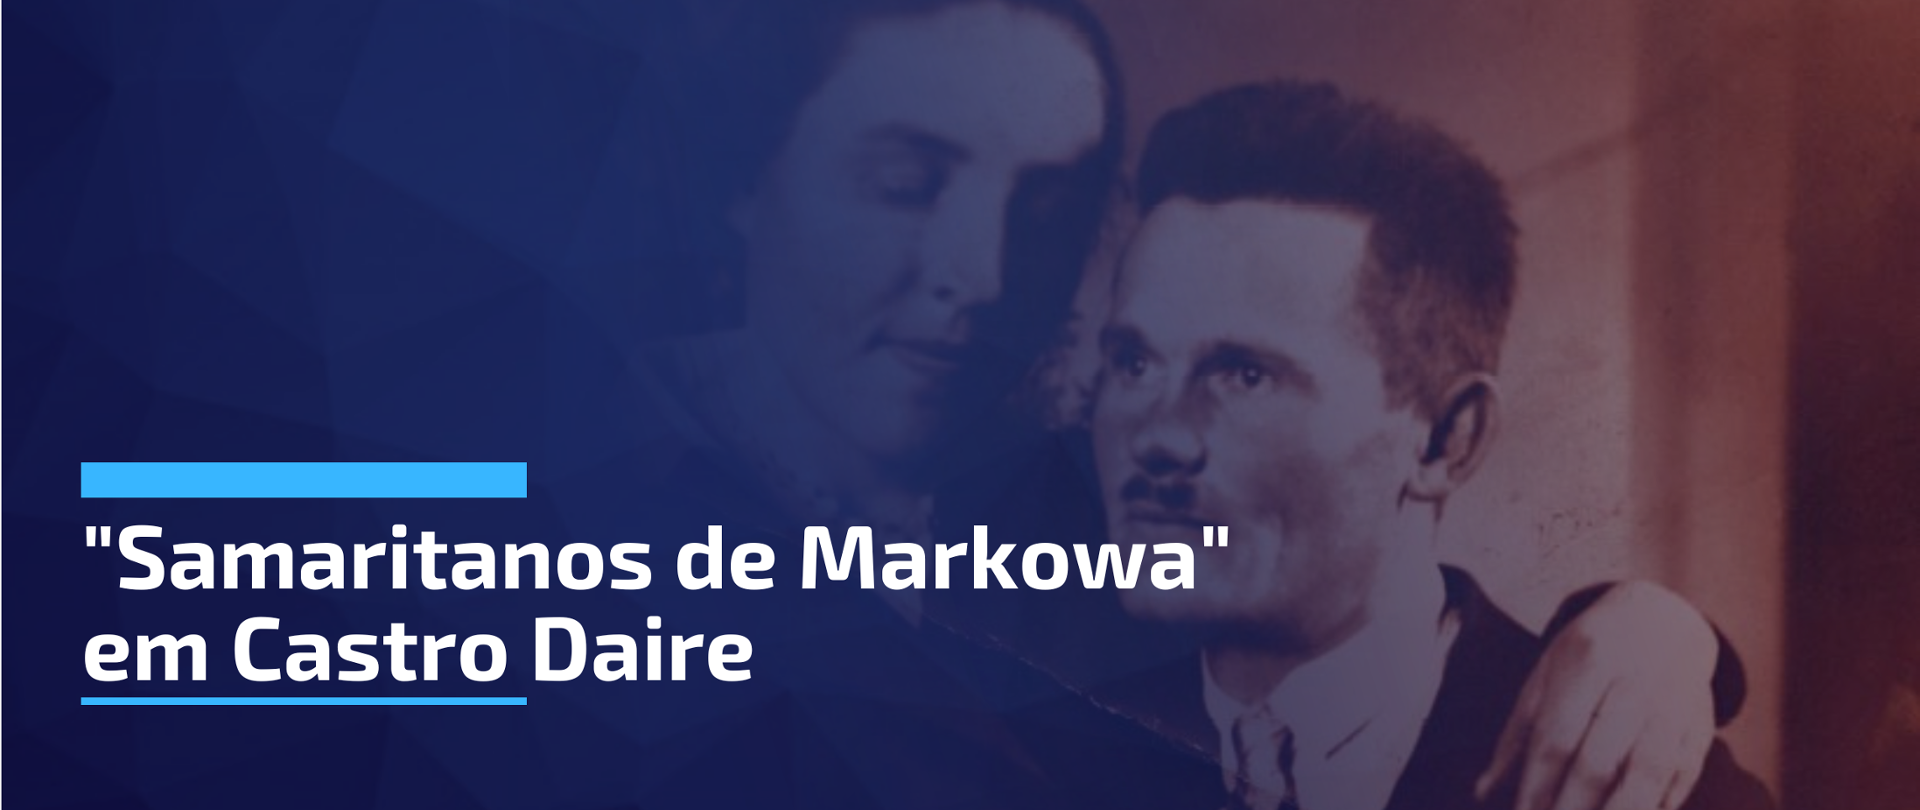 Samaritanos de Markowa